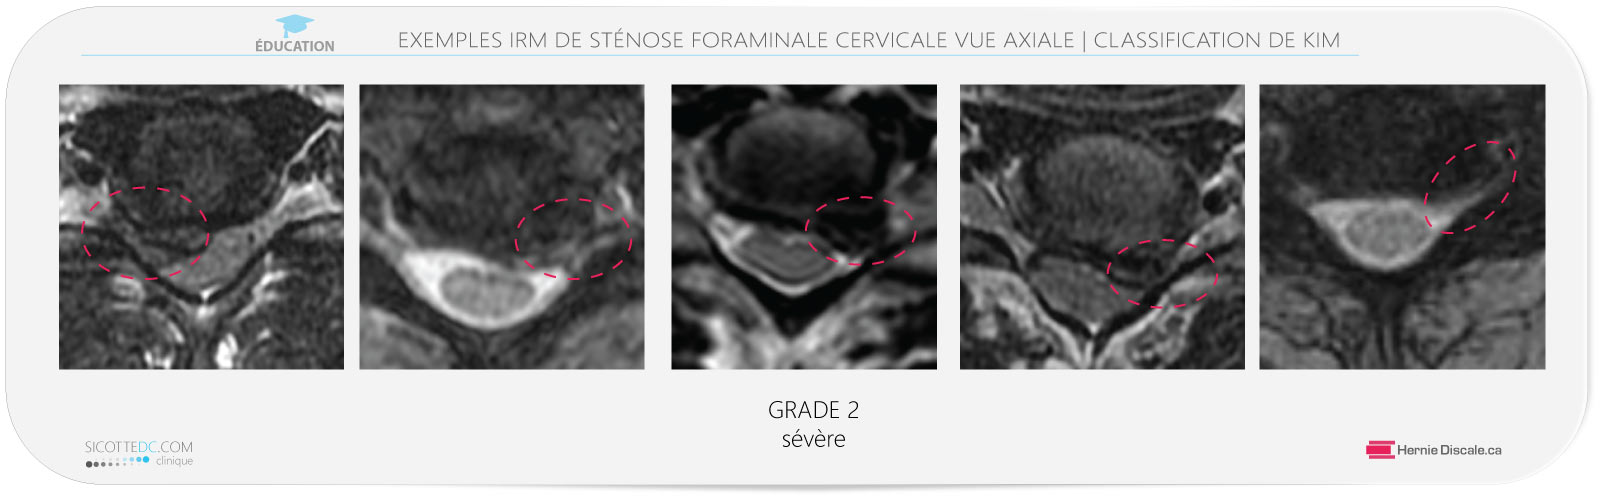 Sténose foraminale cervicale vue axiale IRM grade 2. Traitement avec la méthode Cox® en flexion distraction pour hernie discale C4-C5-C6-C7.